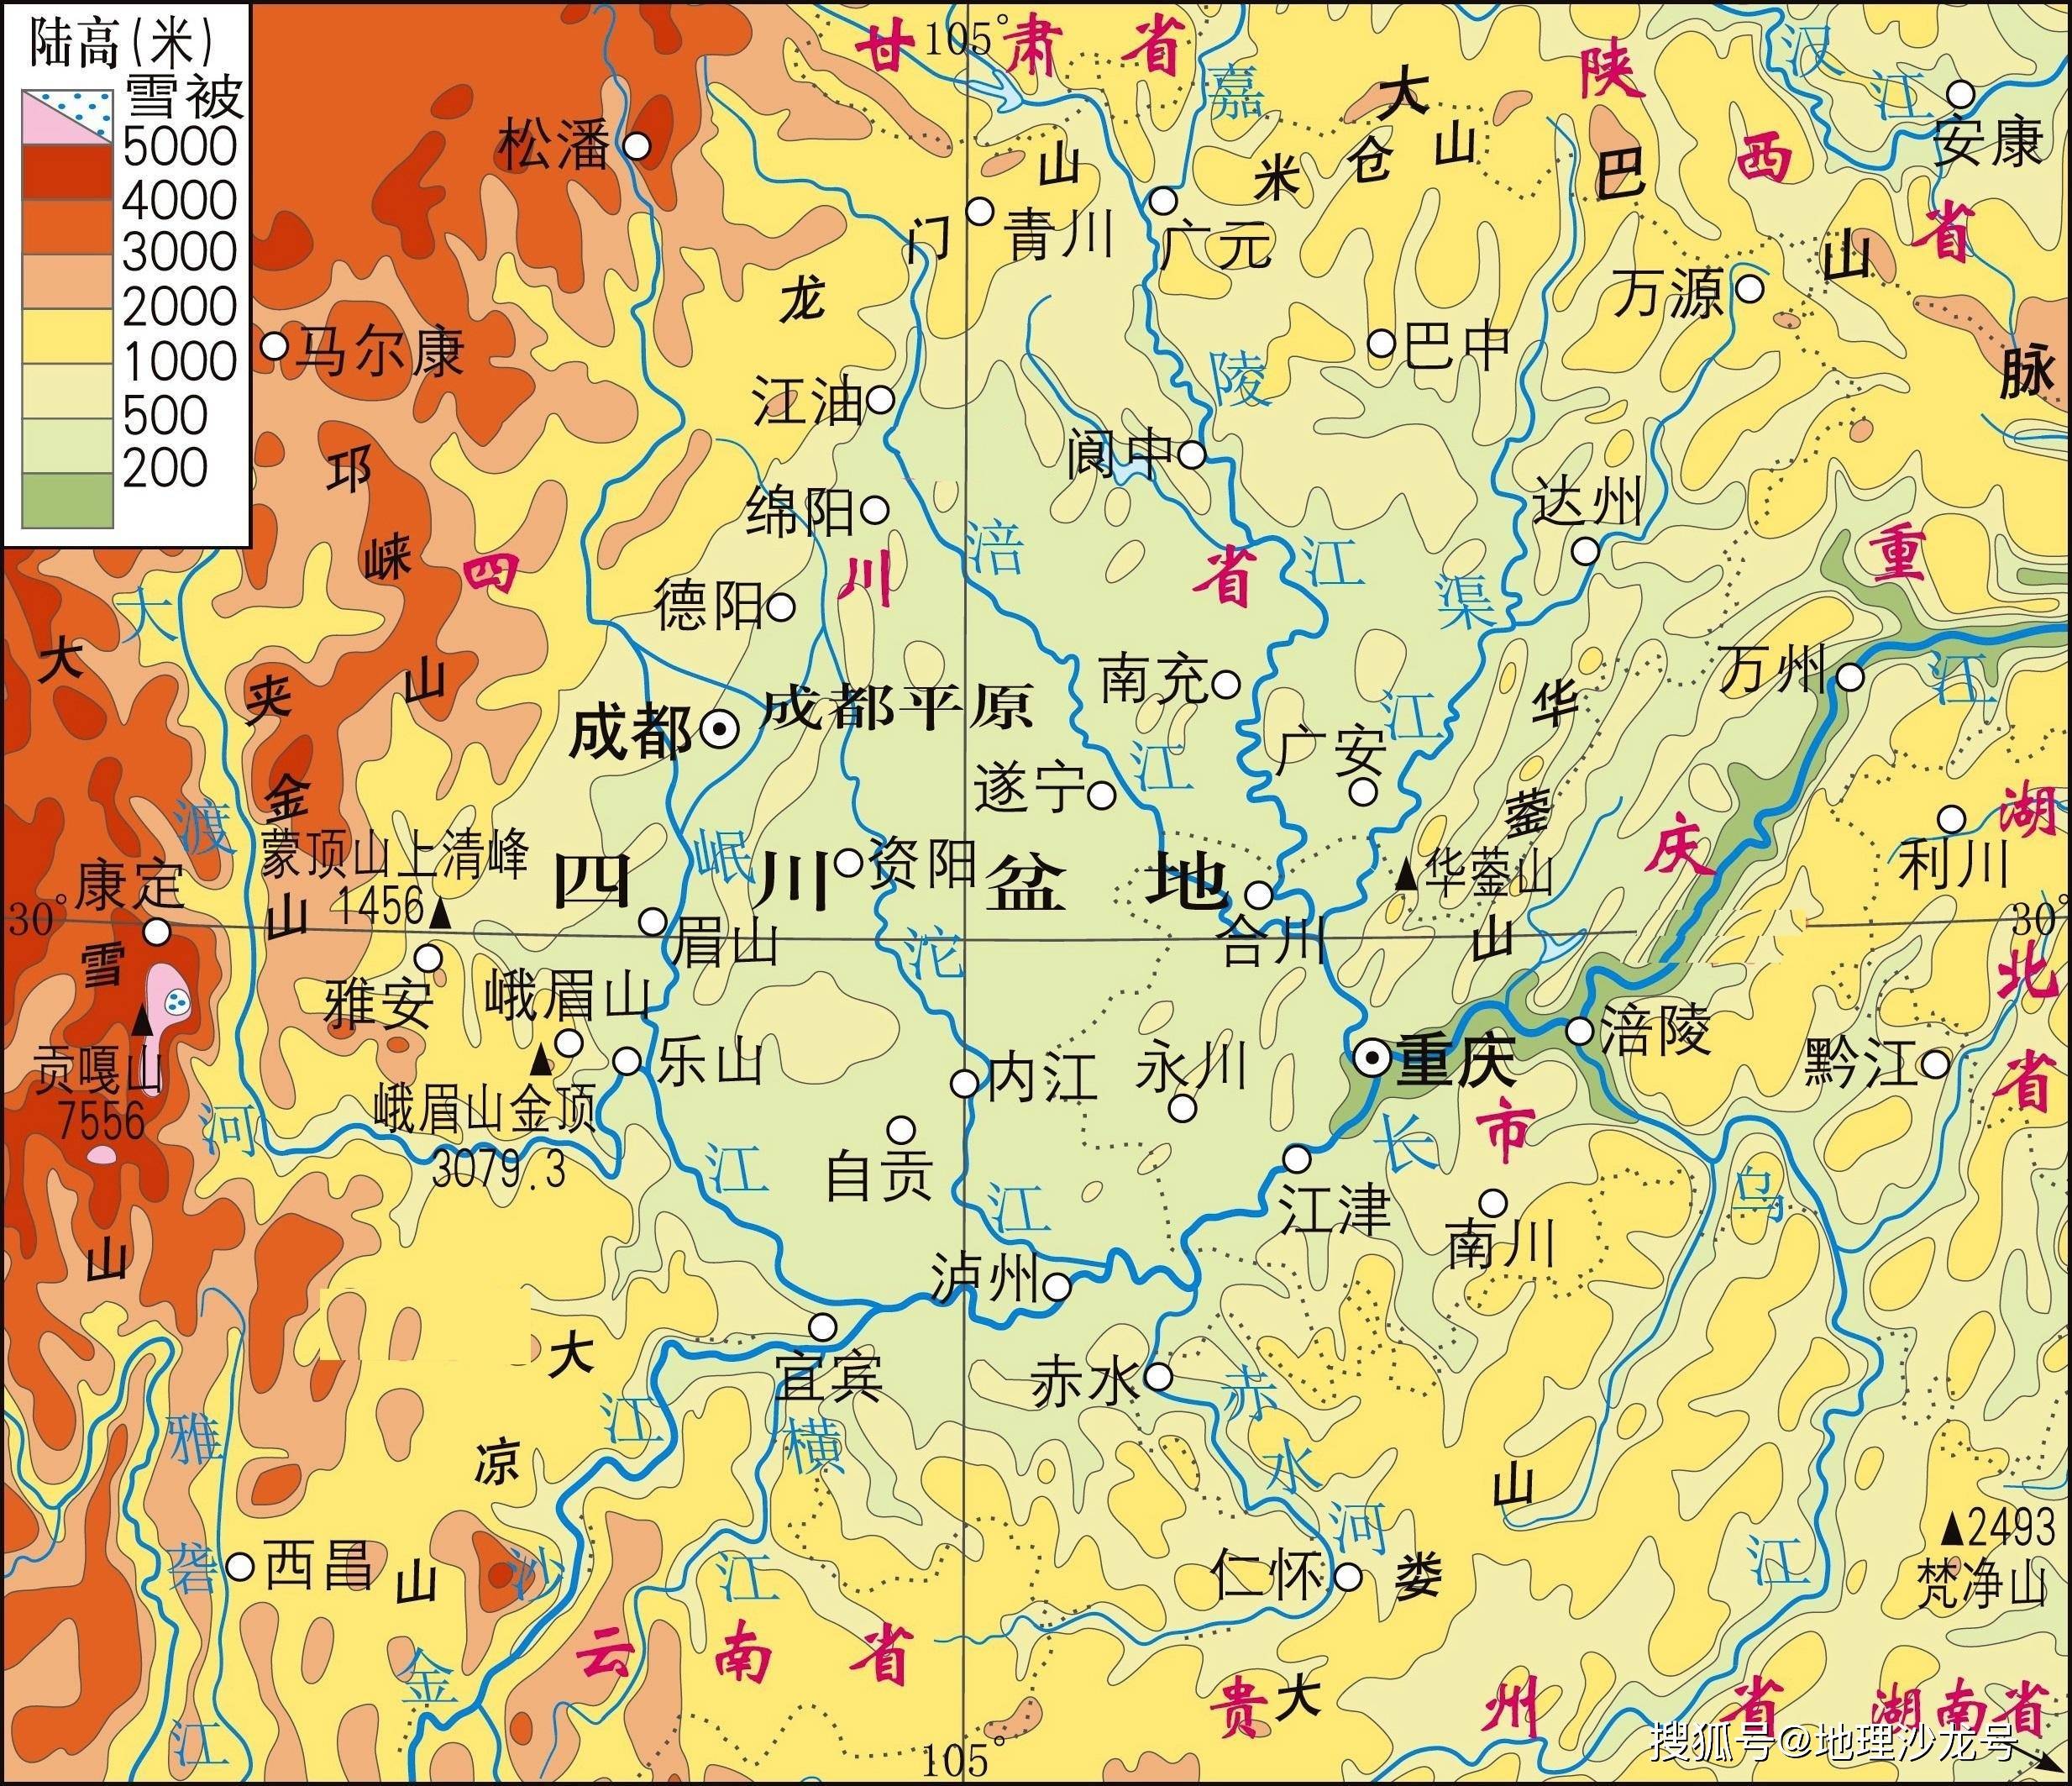 四周高中部低的盆地地形,使四川盆地成为我国当下最热的地区